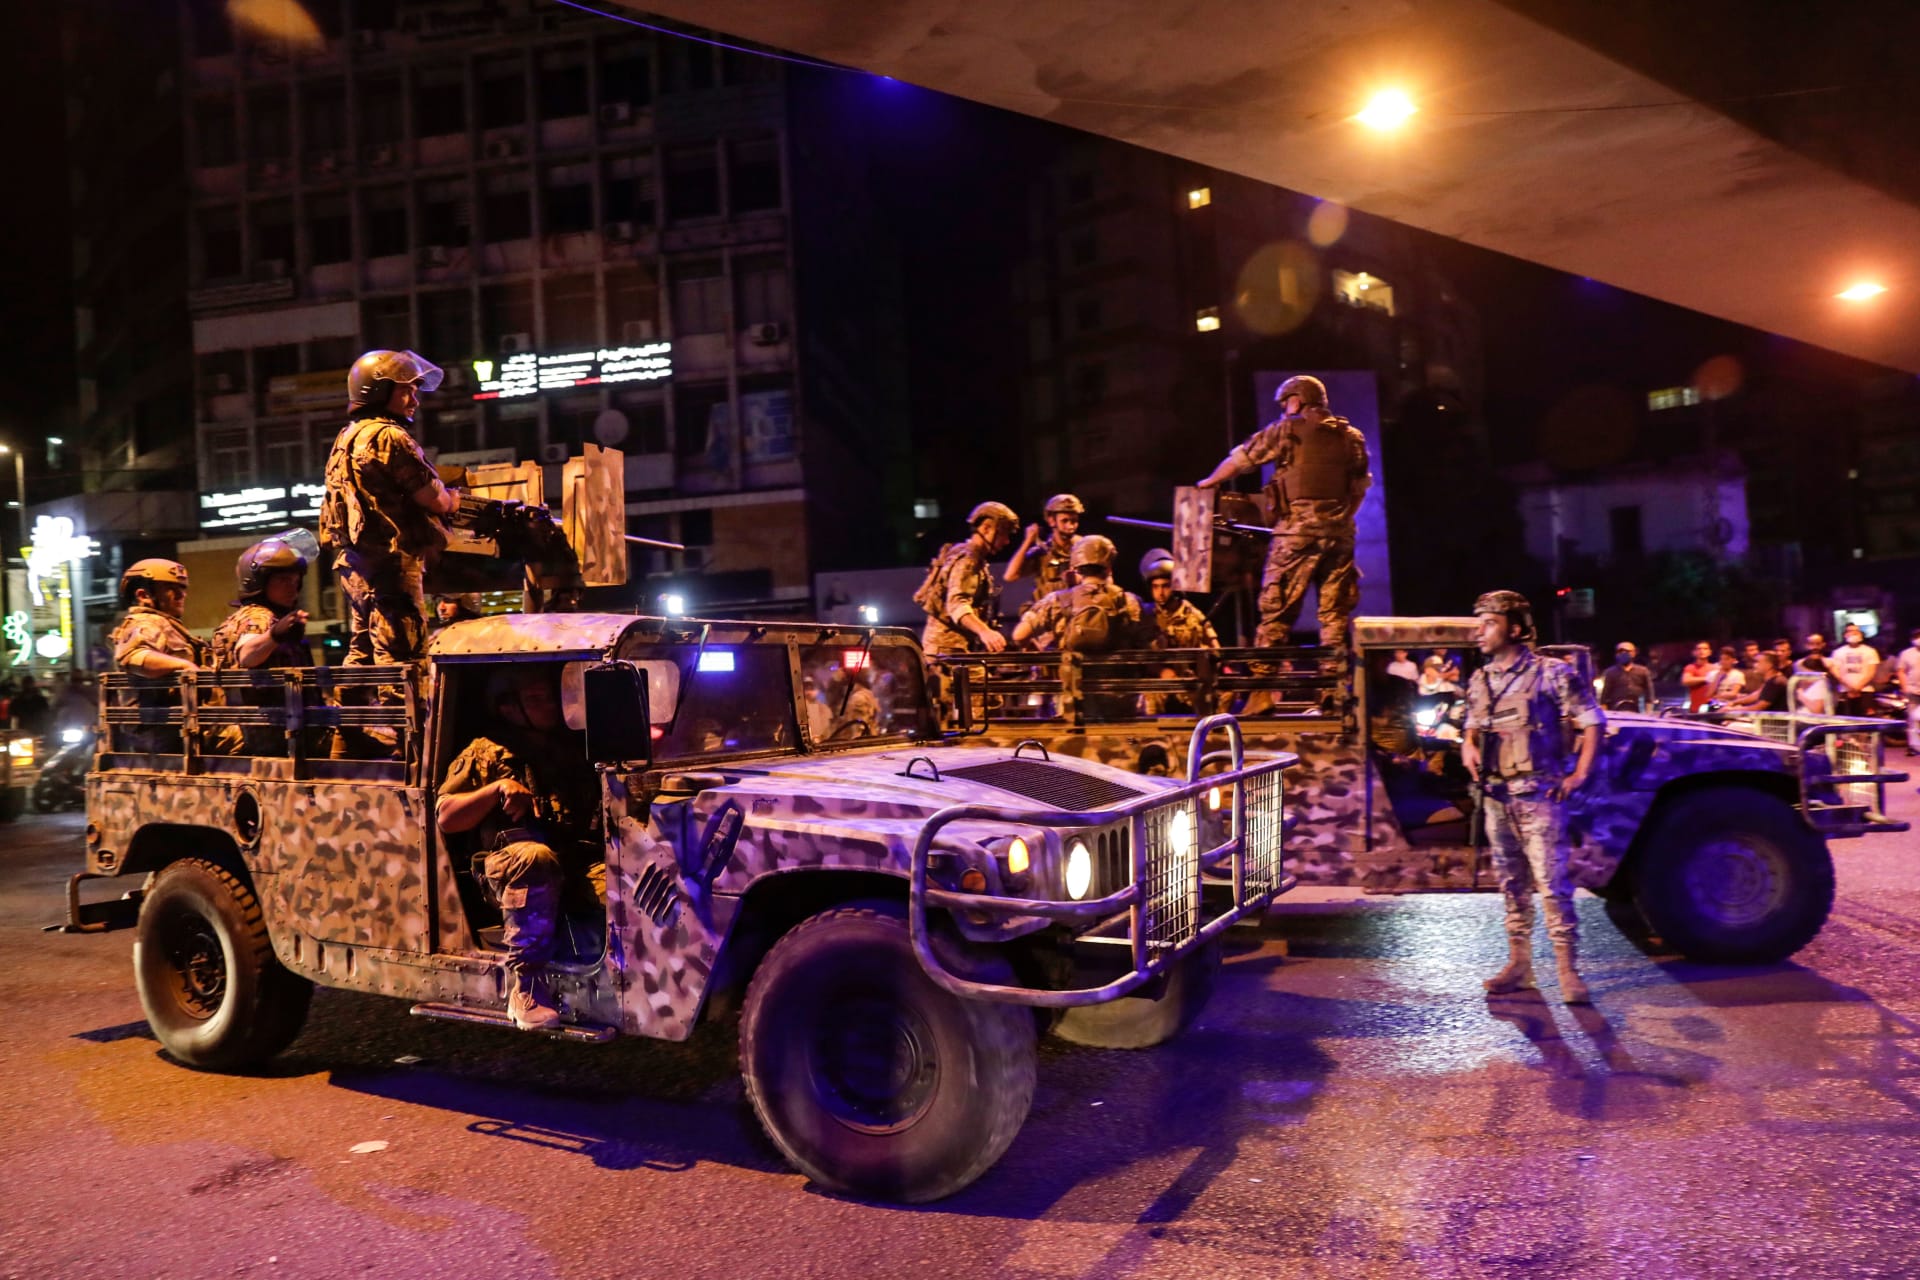 دورية تابعة للجيش اللبناني في العاصمة بيروت لمواجهة احتجاجات واسعة بعد تردي الاوضاع الاقتصادية